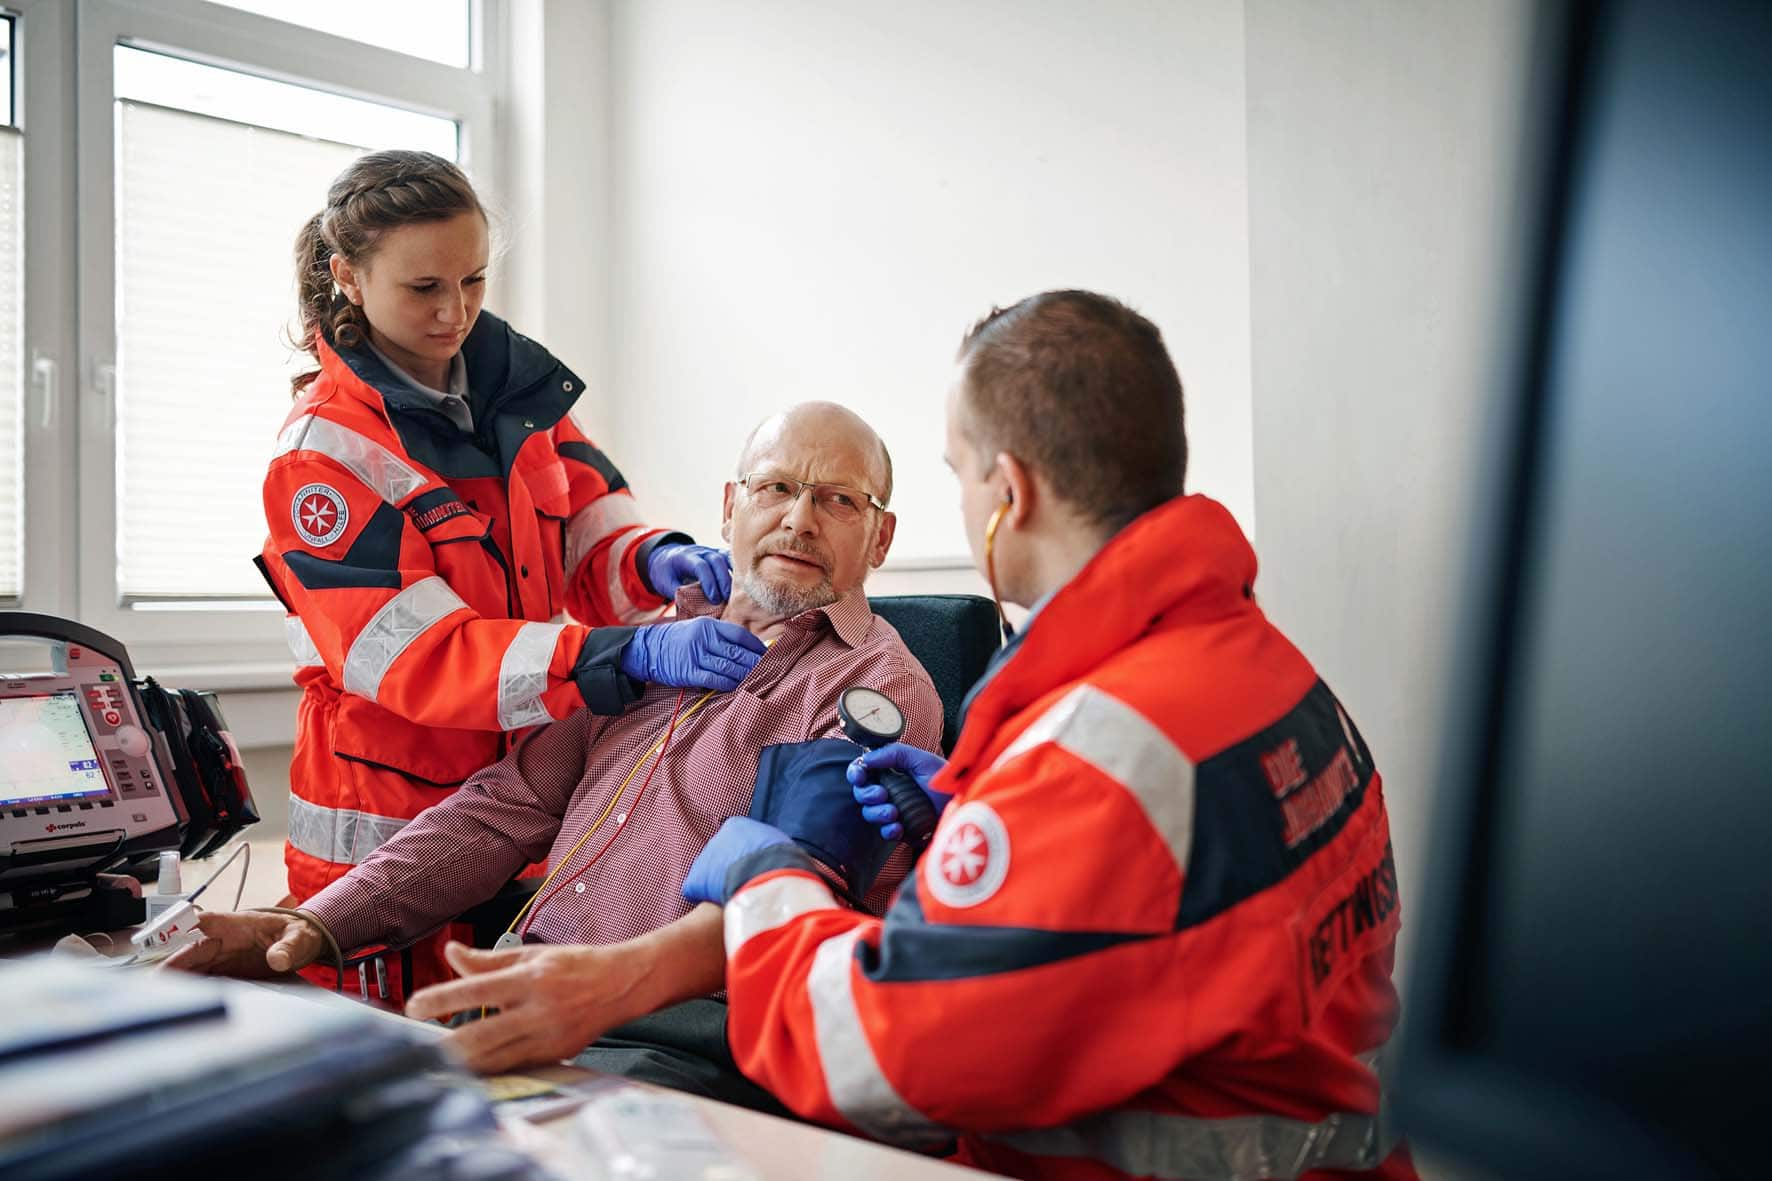 Rettungsdienst Akademie Bonn - Rettungssanitäter:in werden